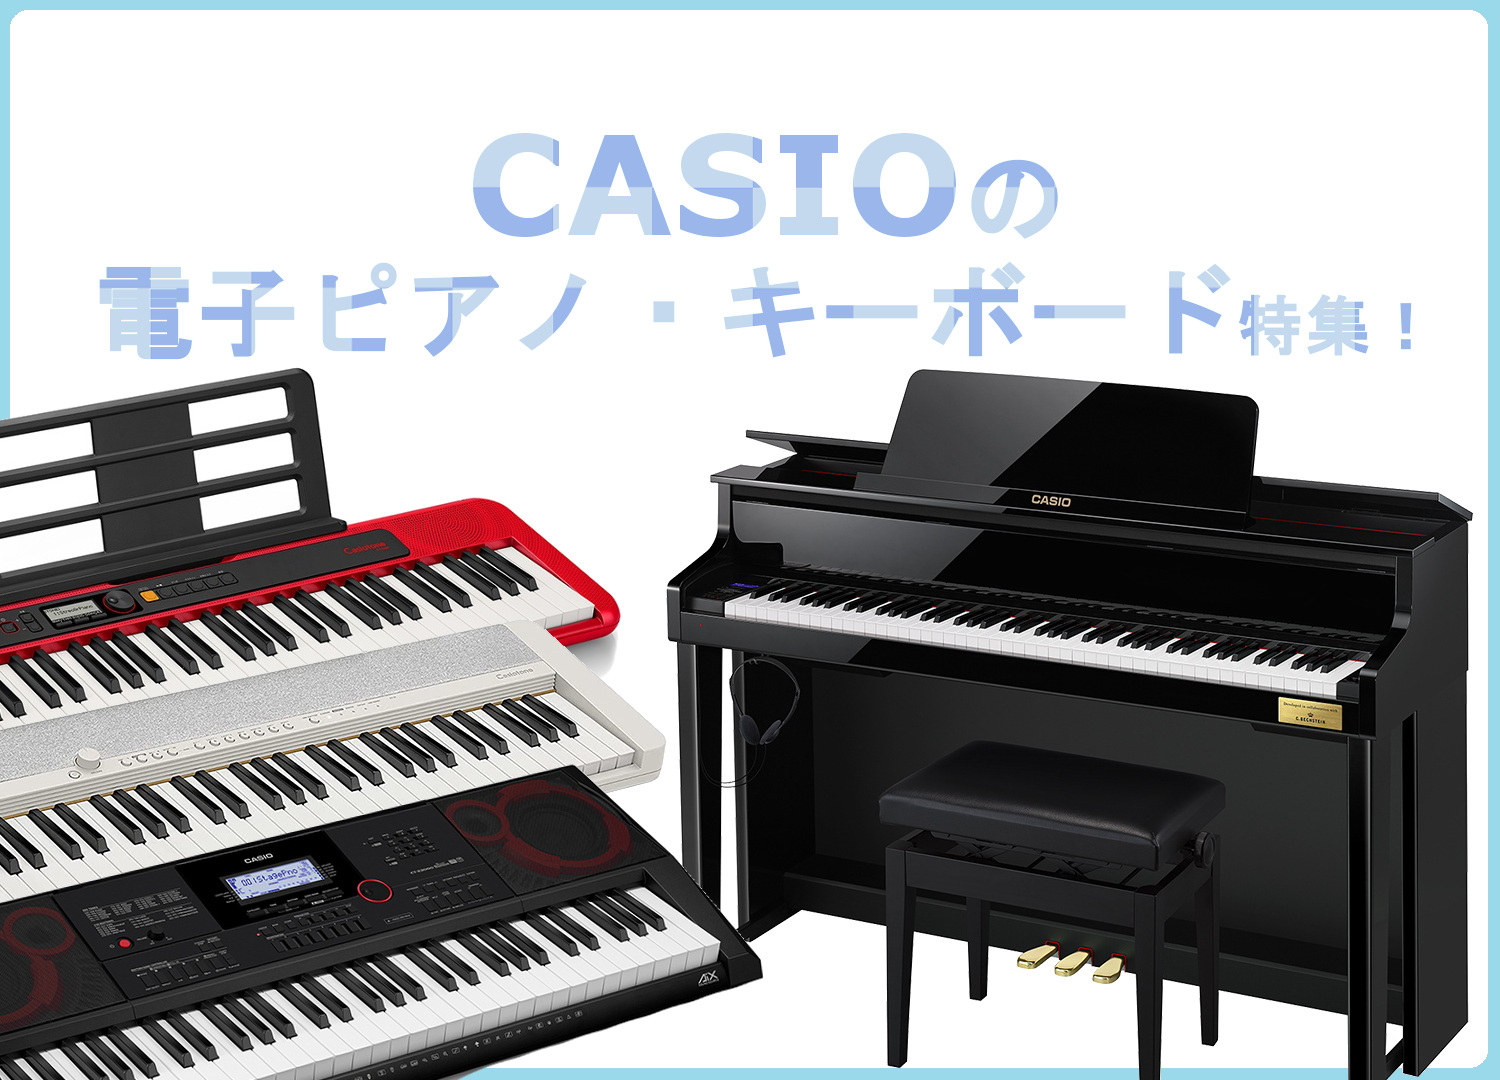 【店頭販売中】CASIOの電子ピアノとキーボードをご紹介！ 島村楽器大分店では、CASIO (カシオ)の電子ピアノ、キーボードを販売中です！こちらの記事では、CASIOの電子ピアノ・キーボードを商品ごとにご紹介させて頂きます♪ CONTENTSCASIOの電子ピアノについて店頭展示中！CASIOの電 […]